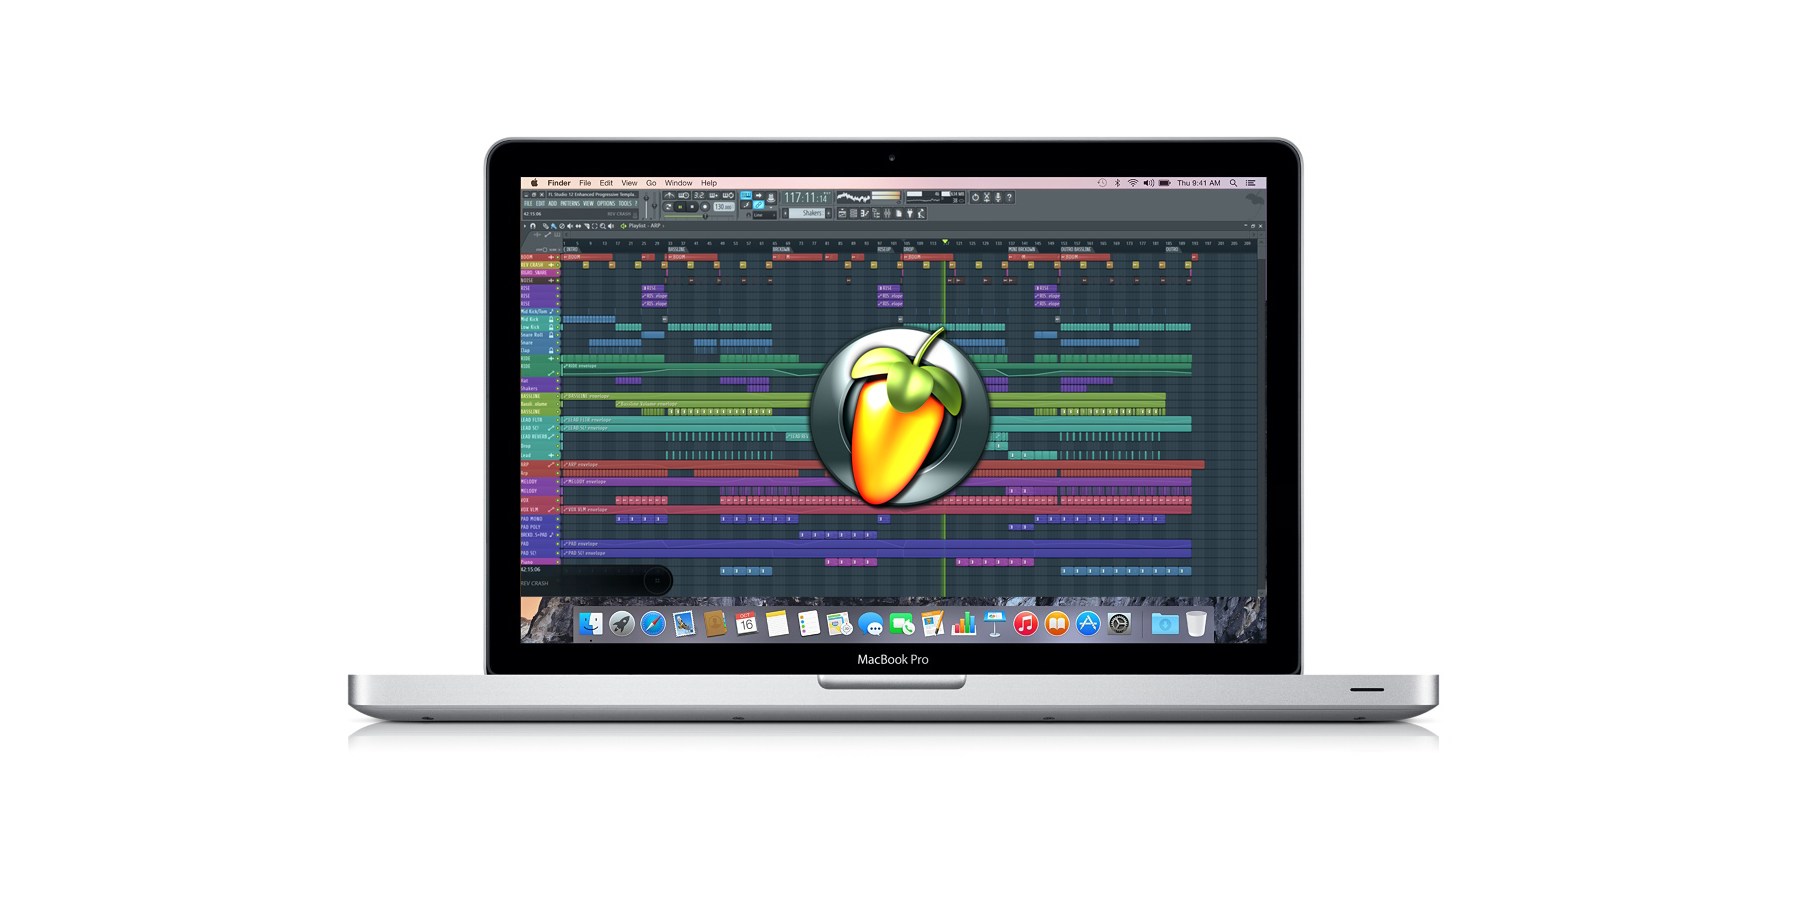 fl studio for mac 10.6.8